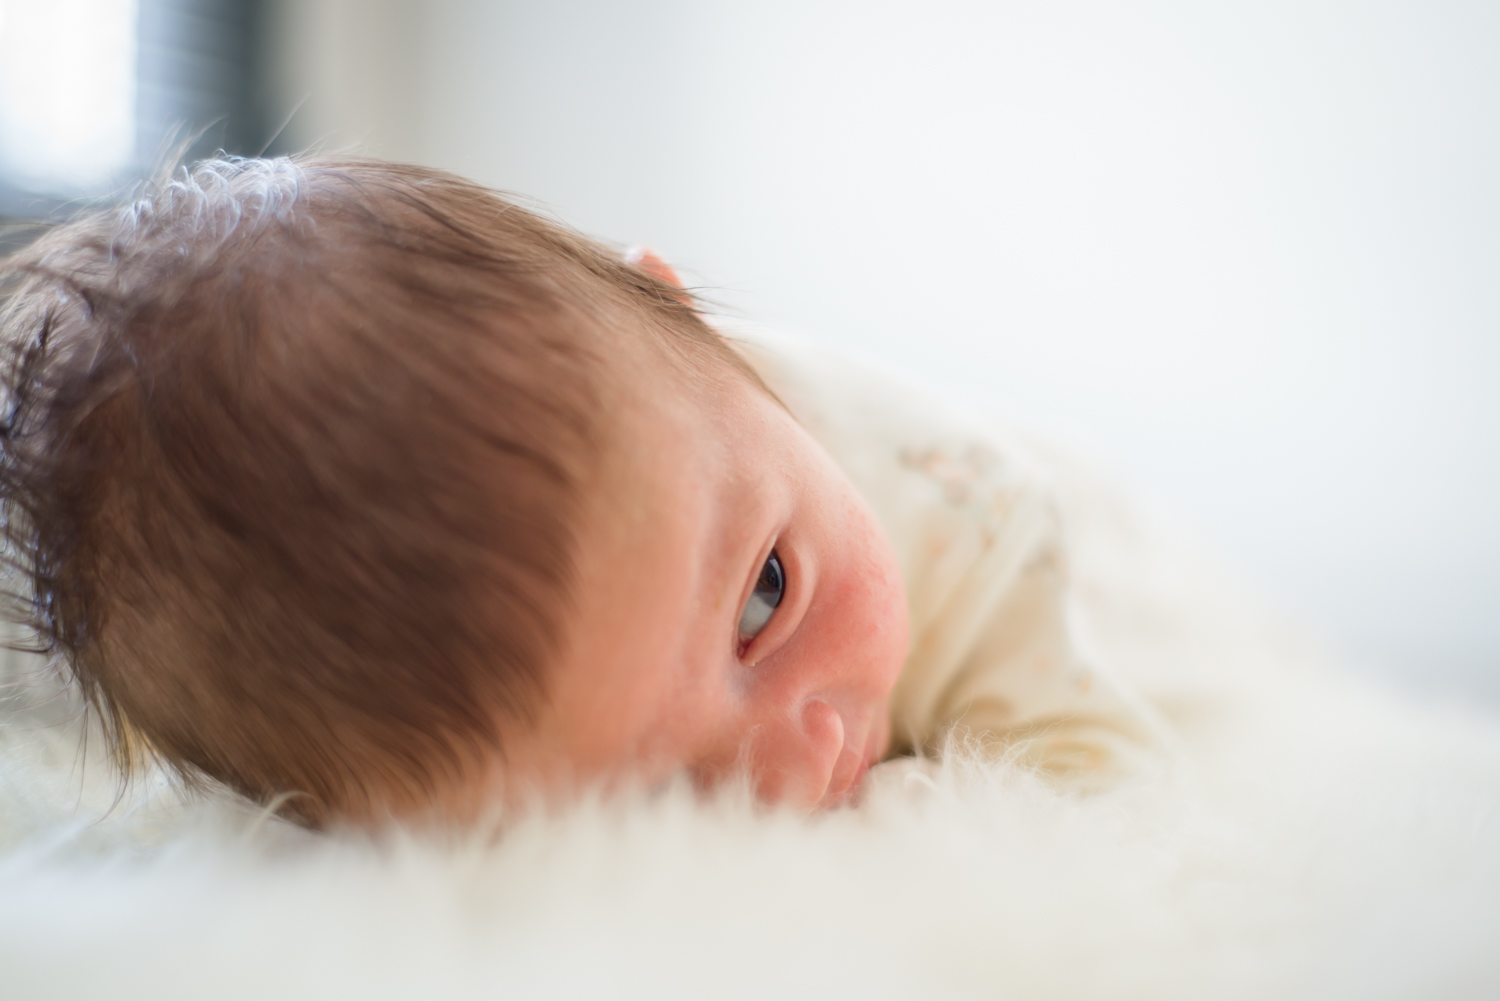 Jack Everett is 1 Month Old - Newborn Update